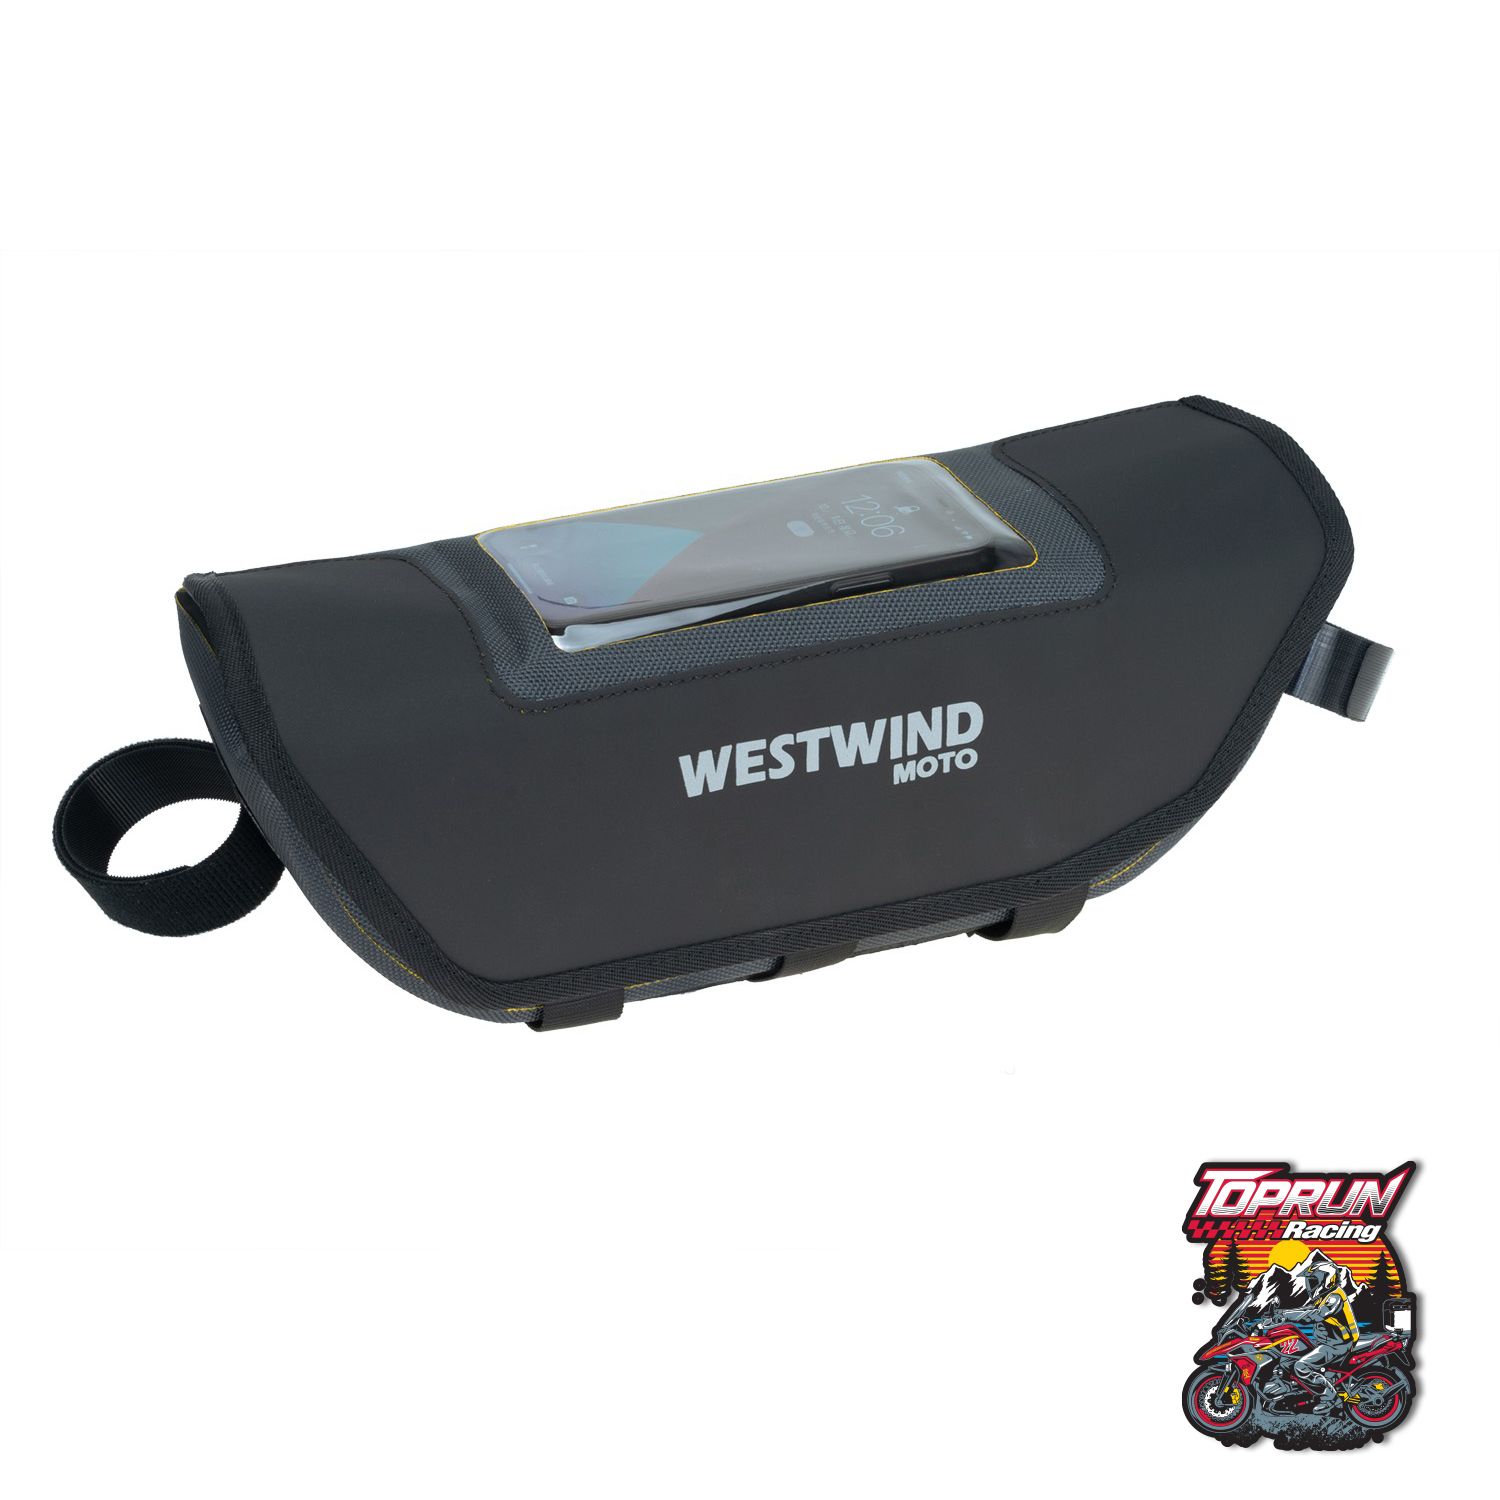  Túi ghi đông Westwind Moto cho các dòng xe Adventure 